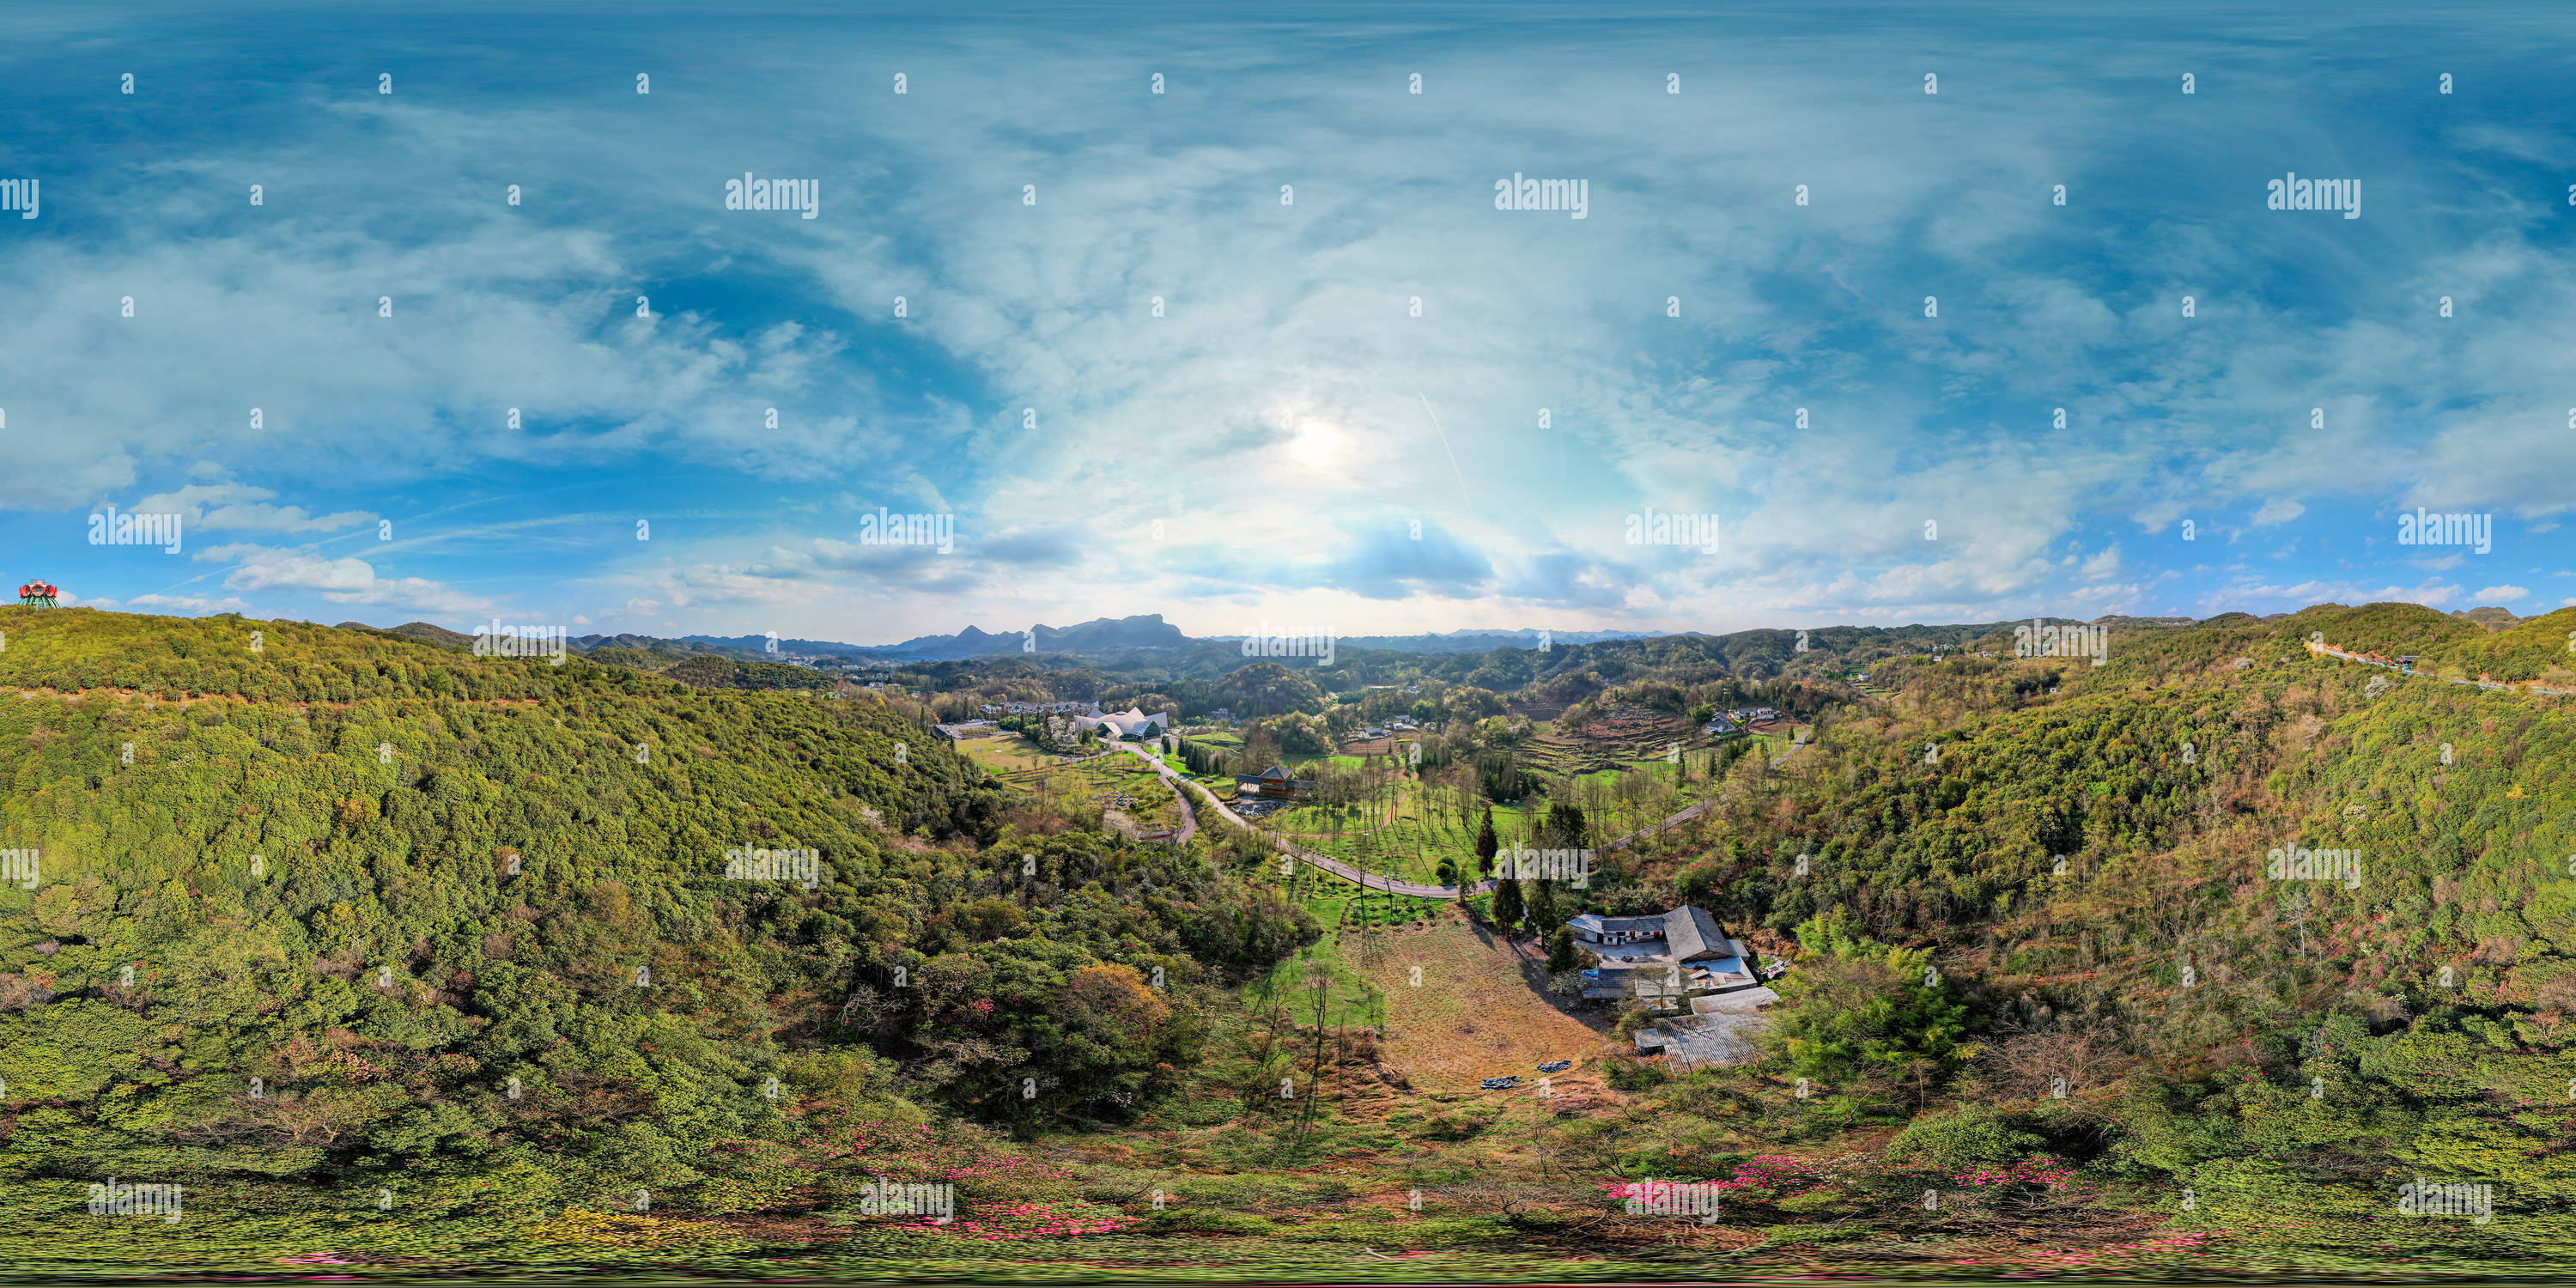 360 Grad Panorama Ansicht von Ein Tal voller Frühling 春意盎然的山谷